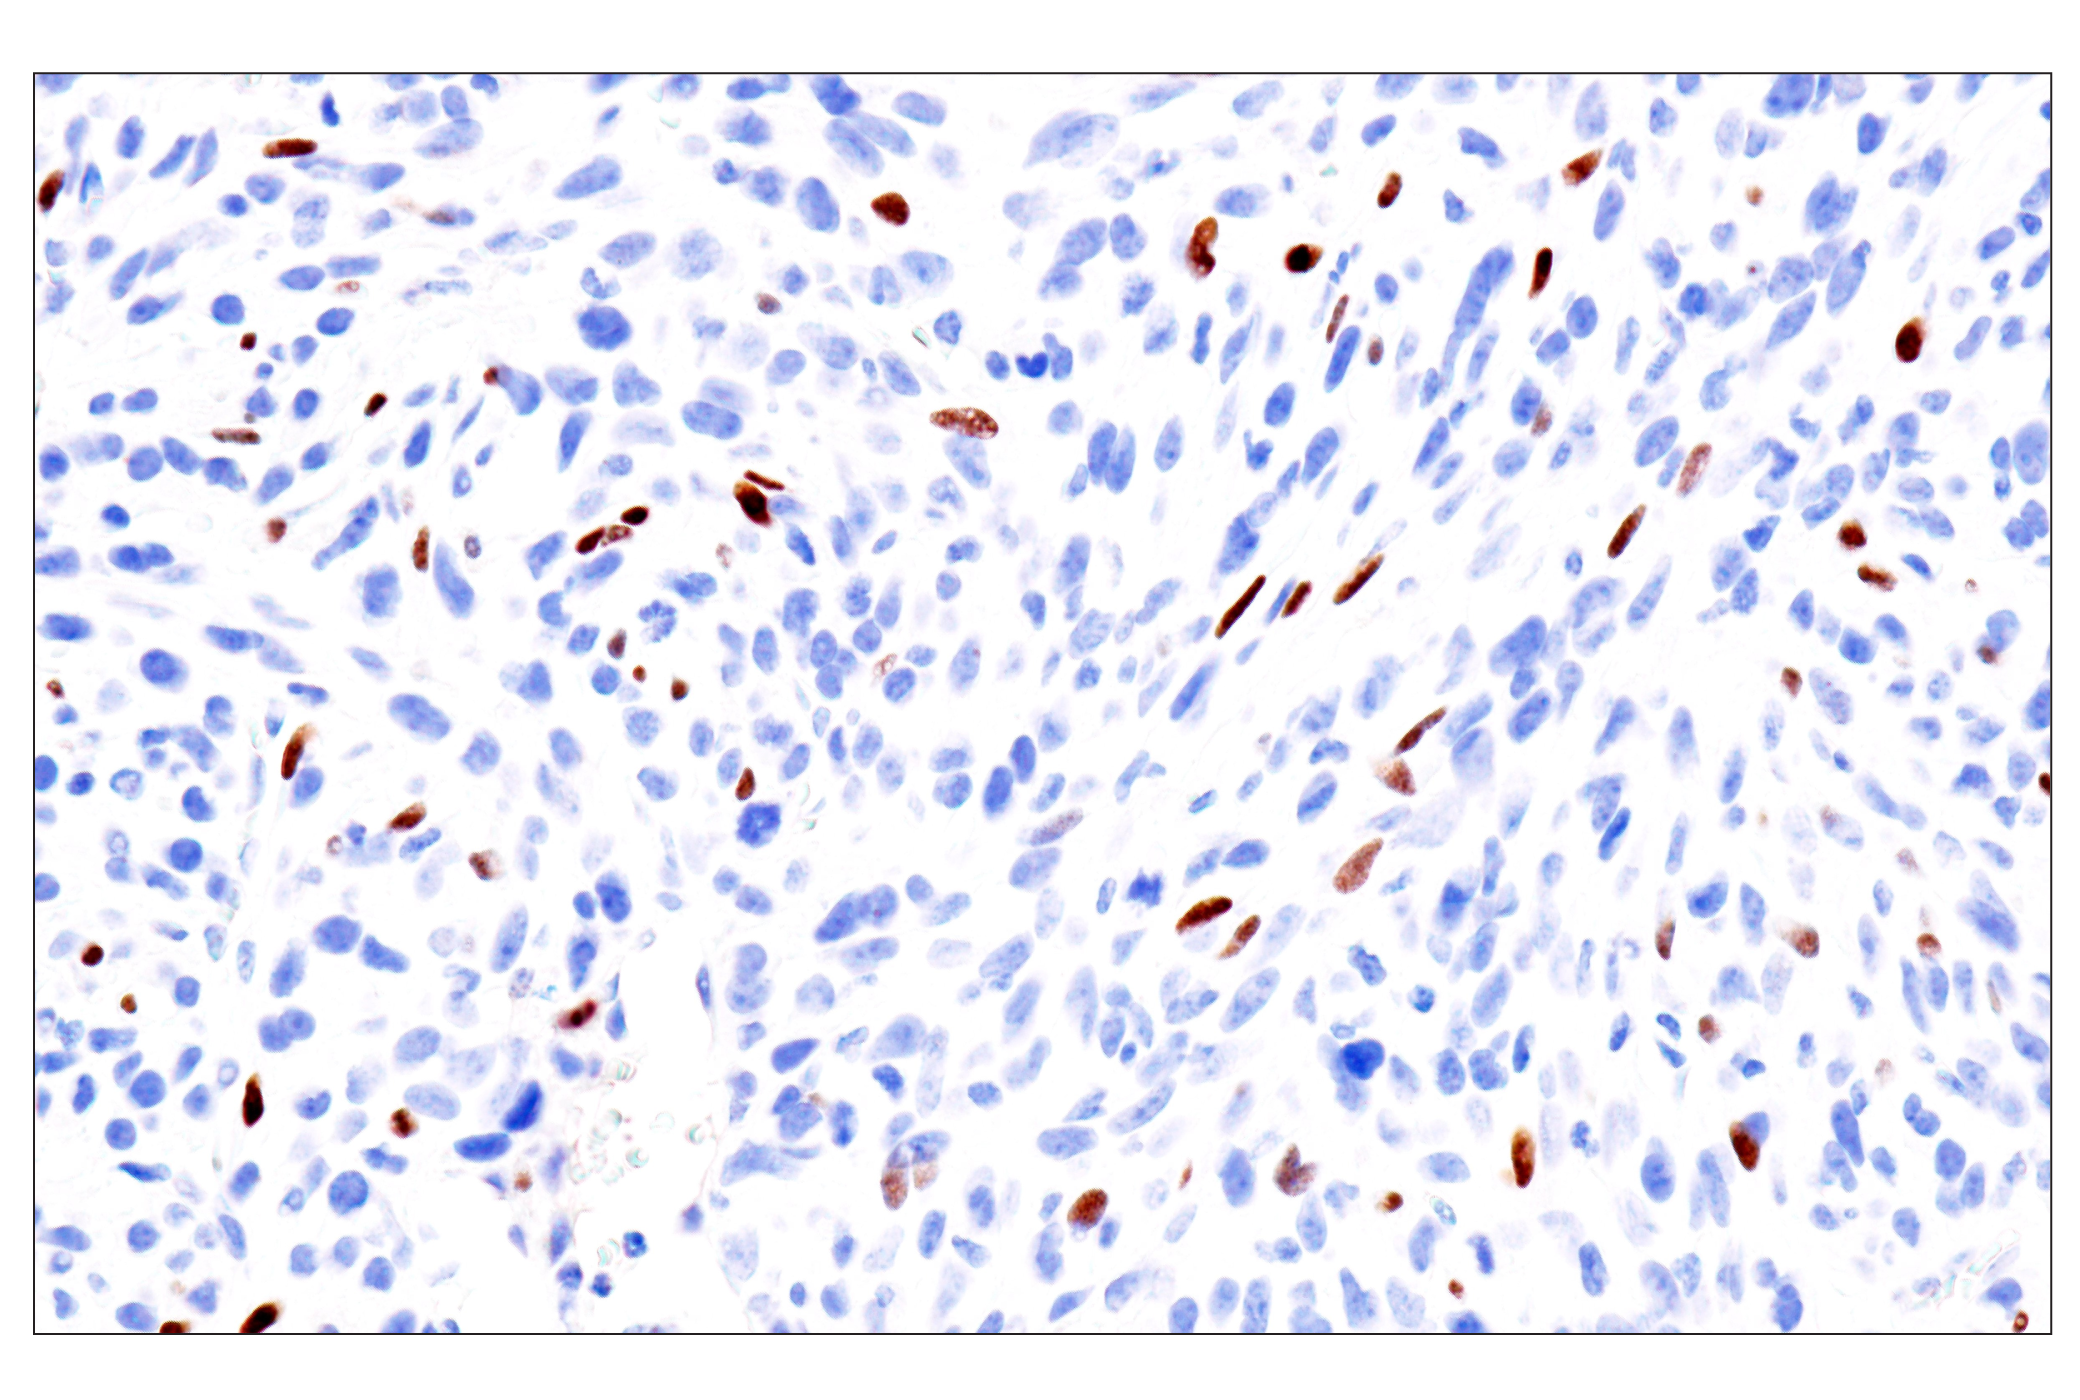  Image 57: GATA Transcription Factor Antibody Sampler Kit